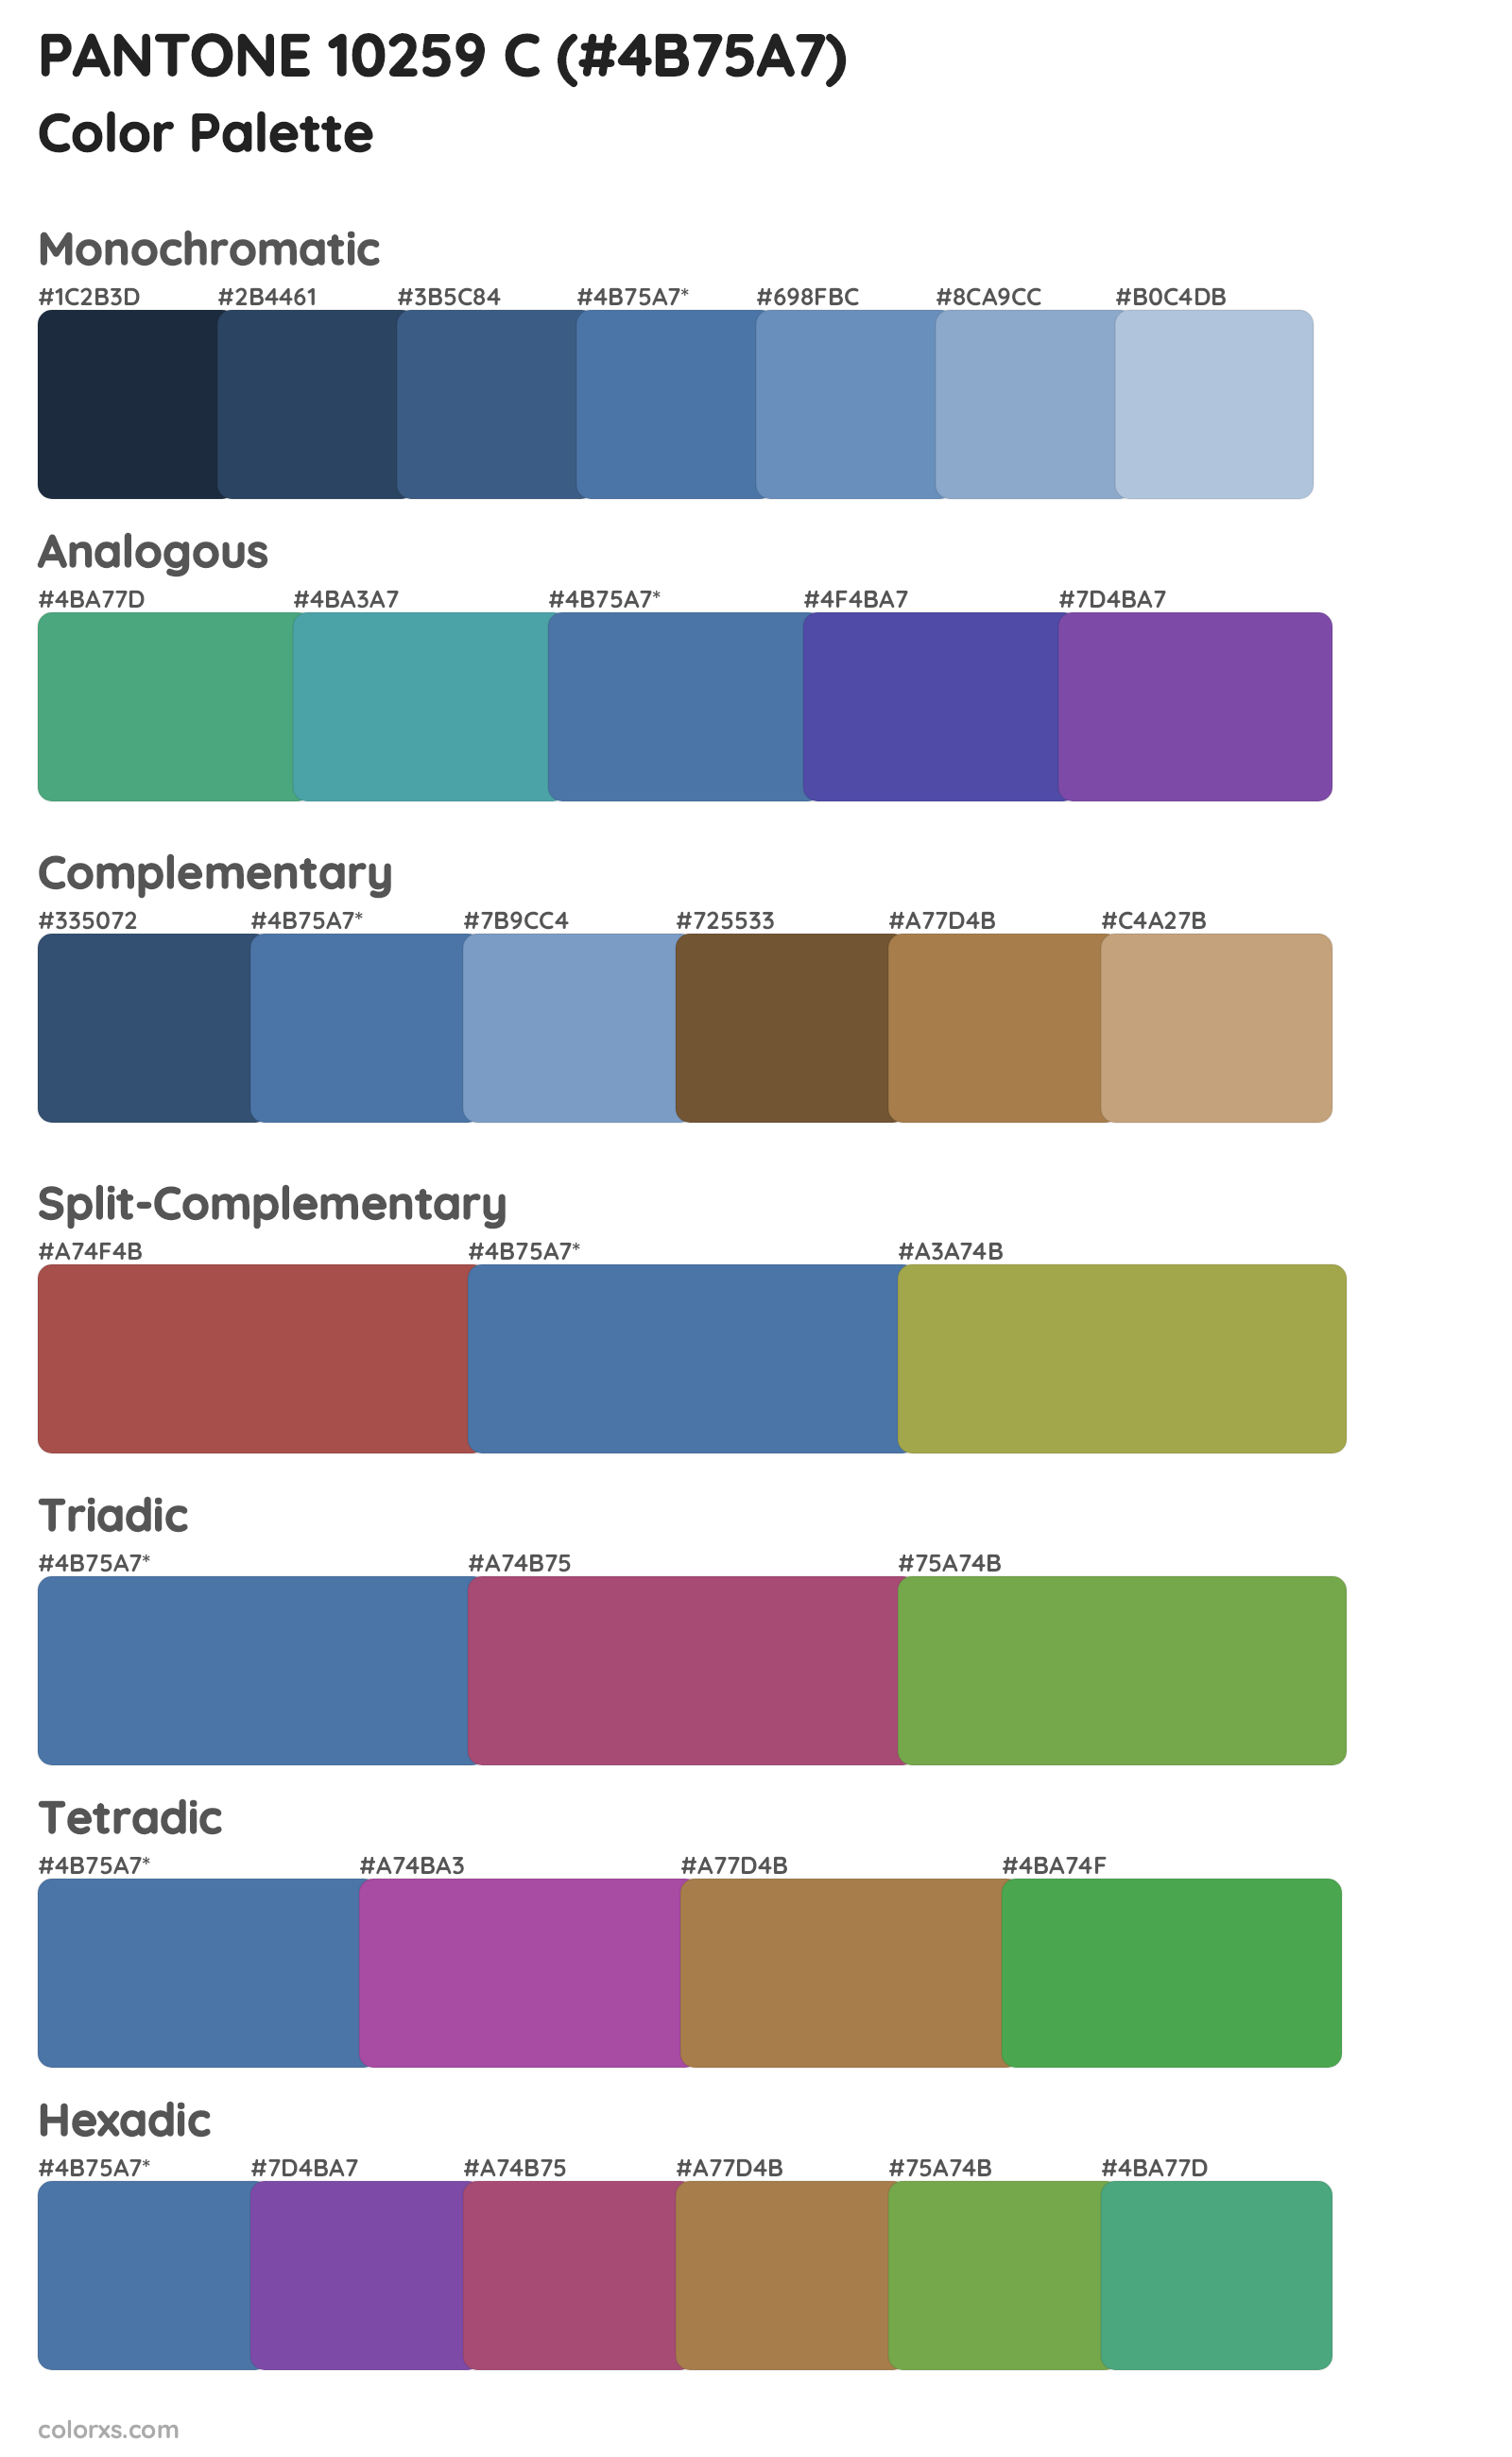 PANTONE 10259 C Color Scheme Palettes